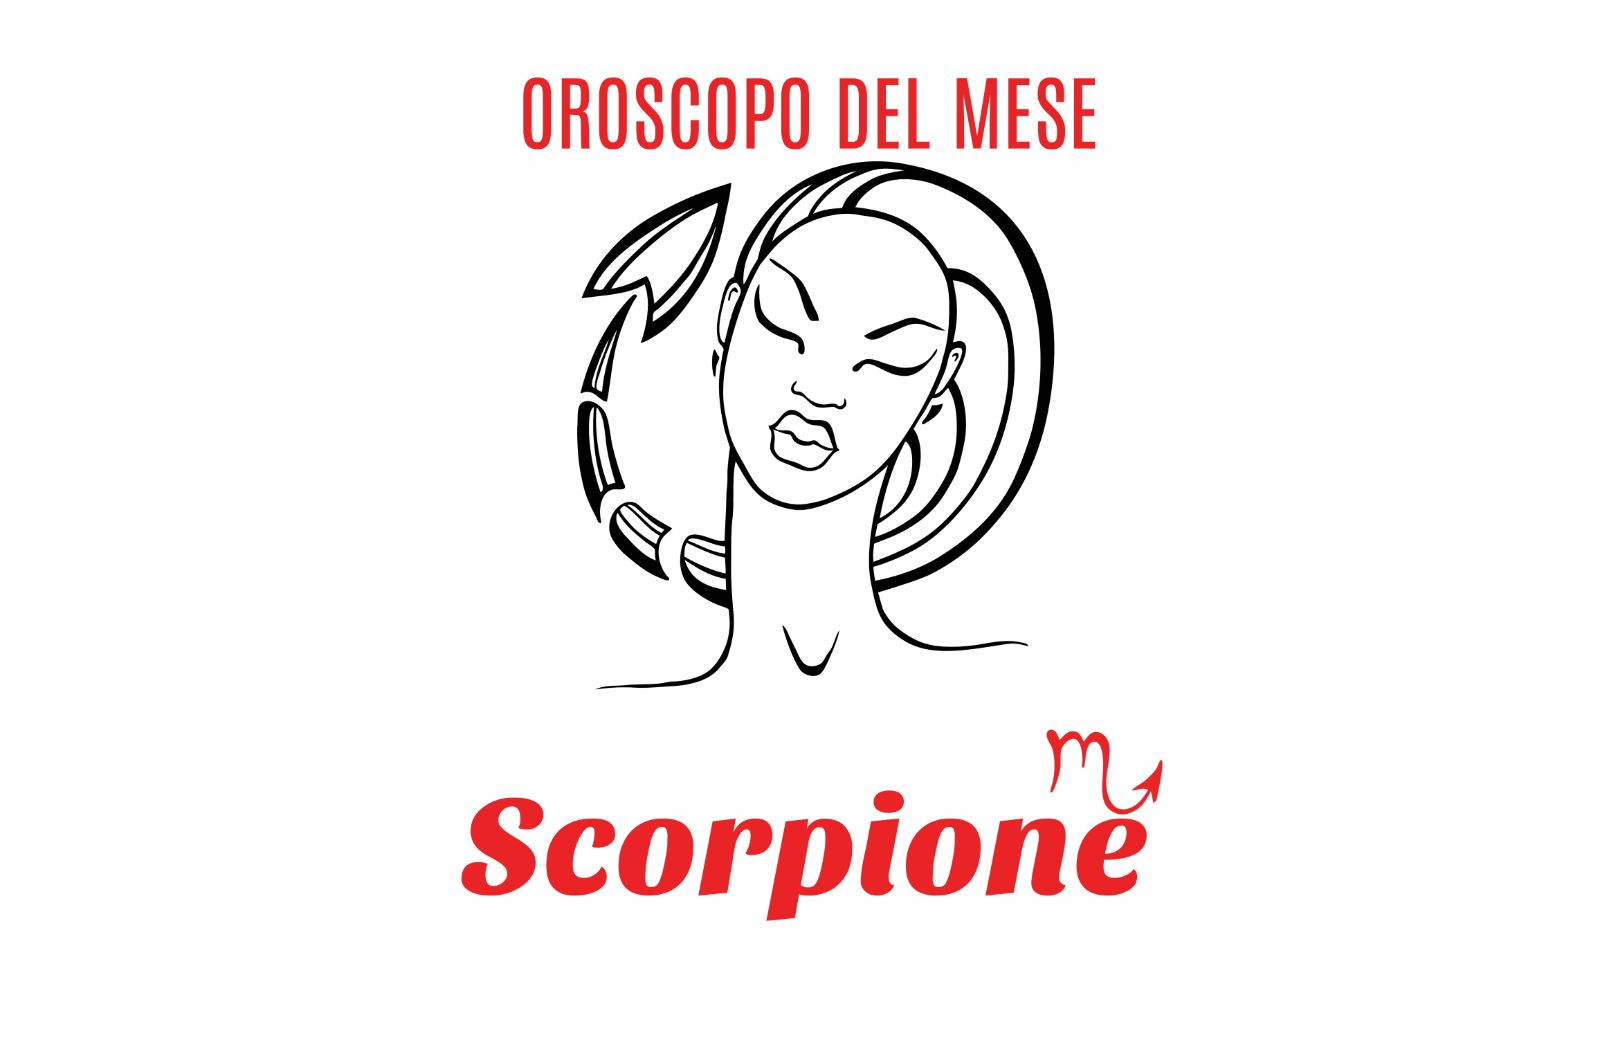 Oroscopo del mese: Scorpione - gennaio 2019